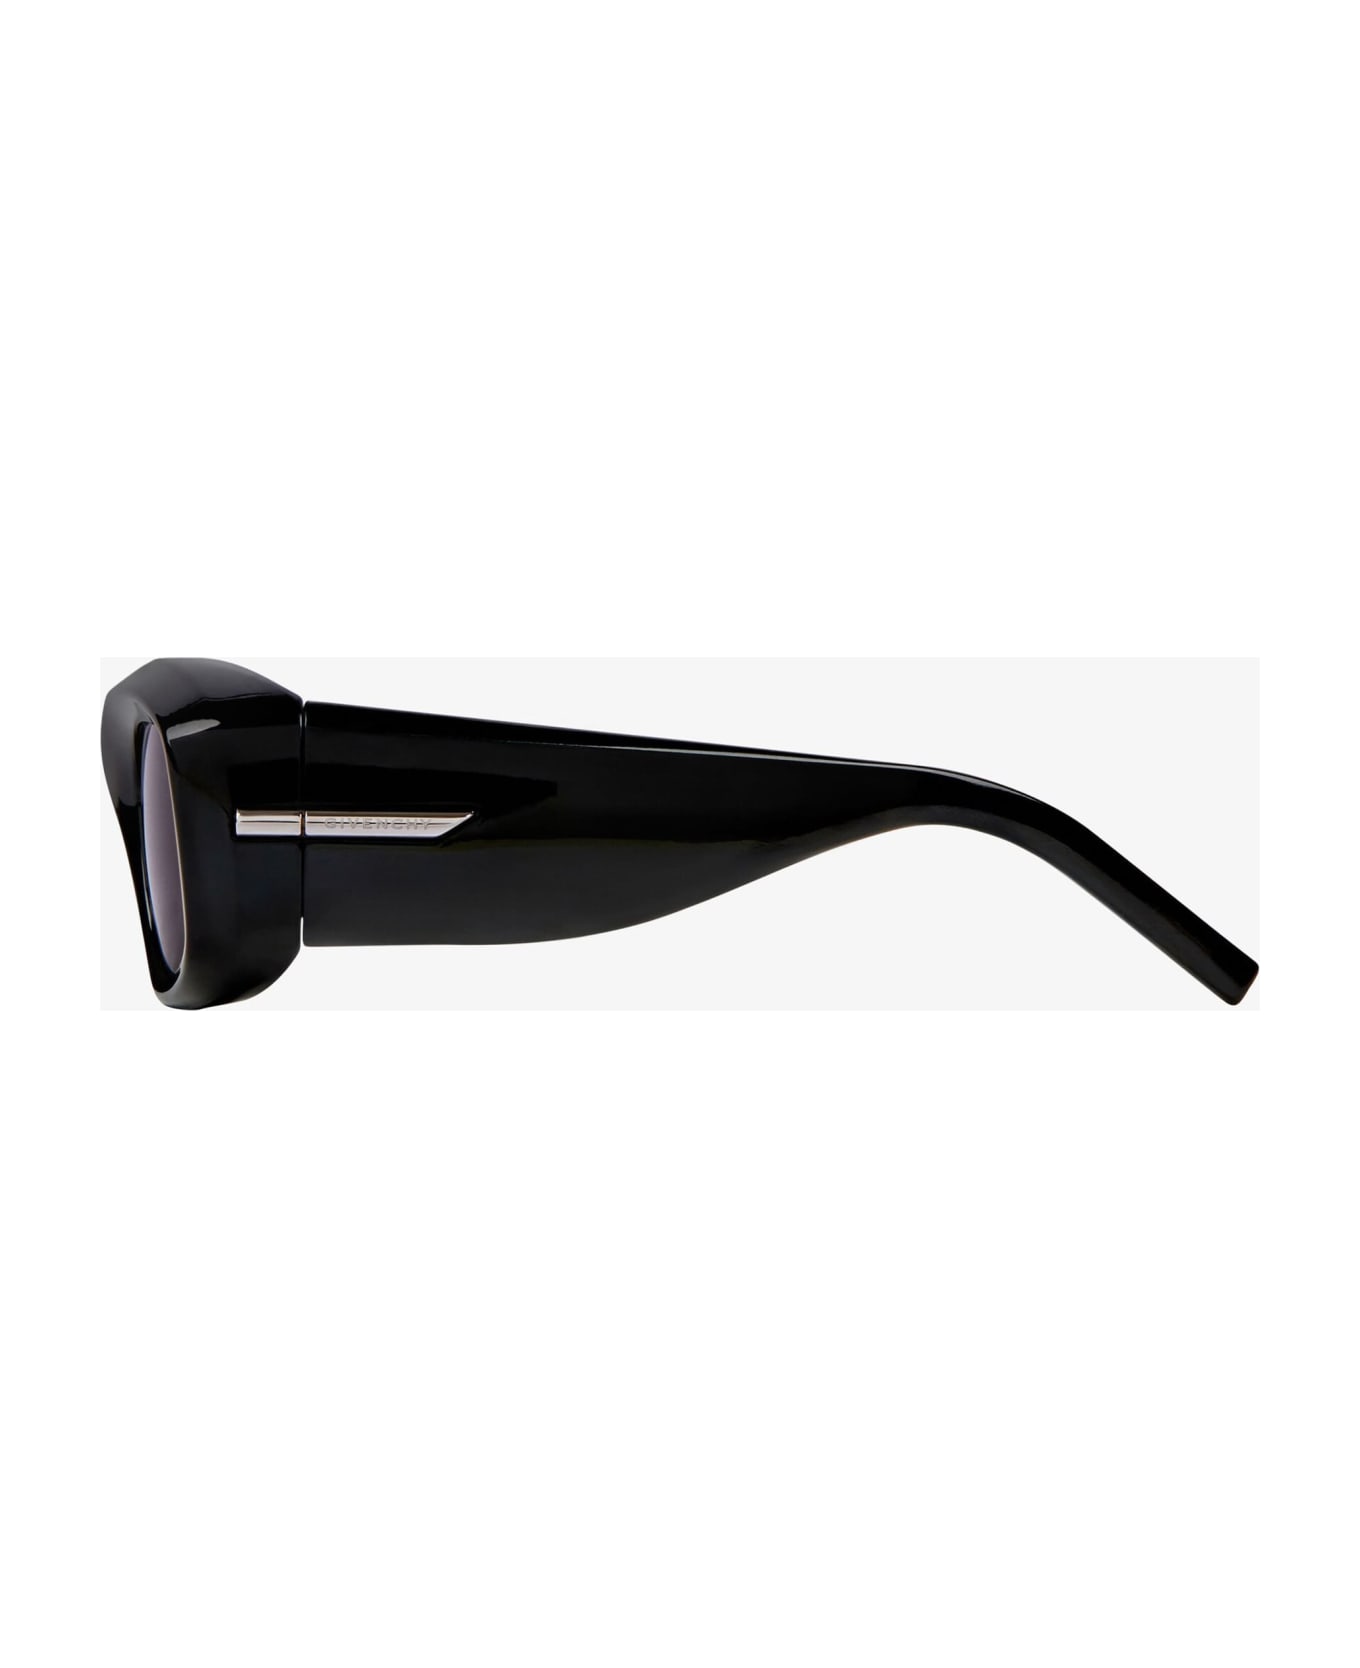 Givenchy Eyewear Gv40044u - Shiny Black Sunglasses - Black